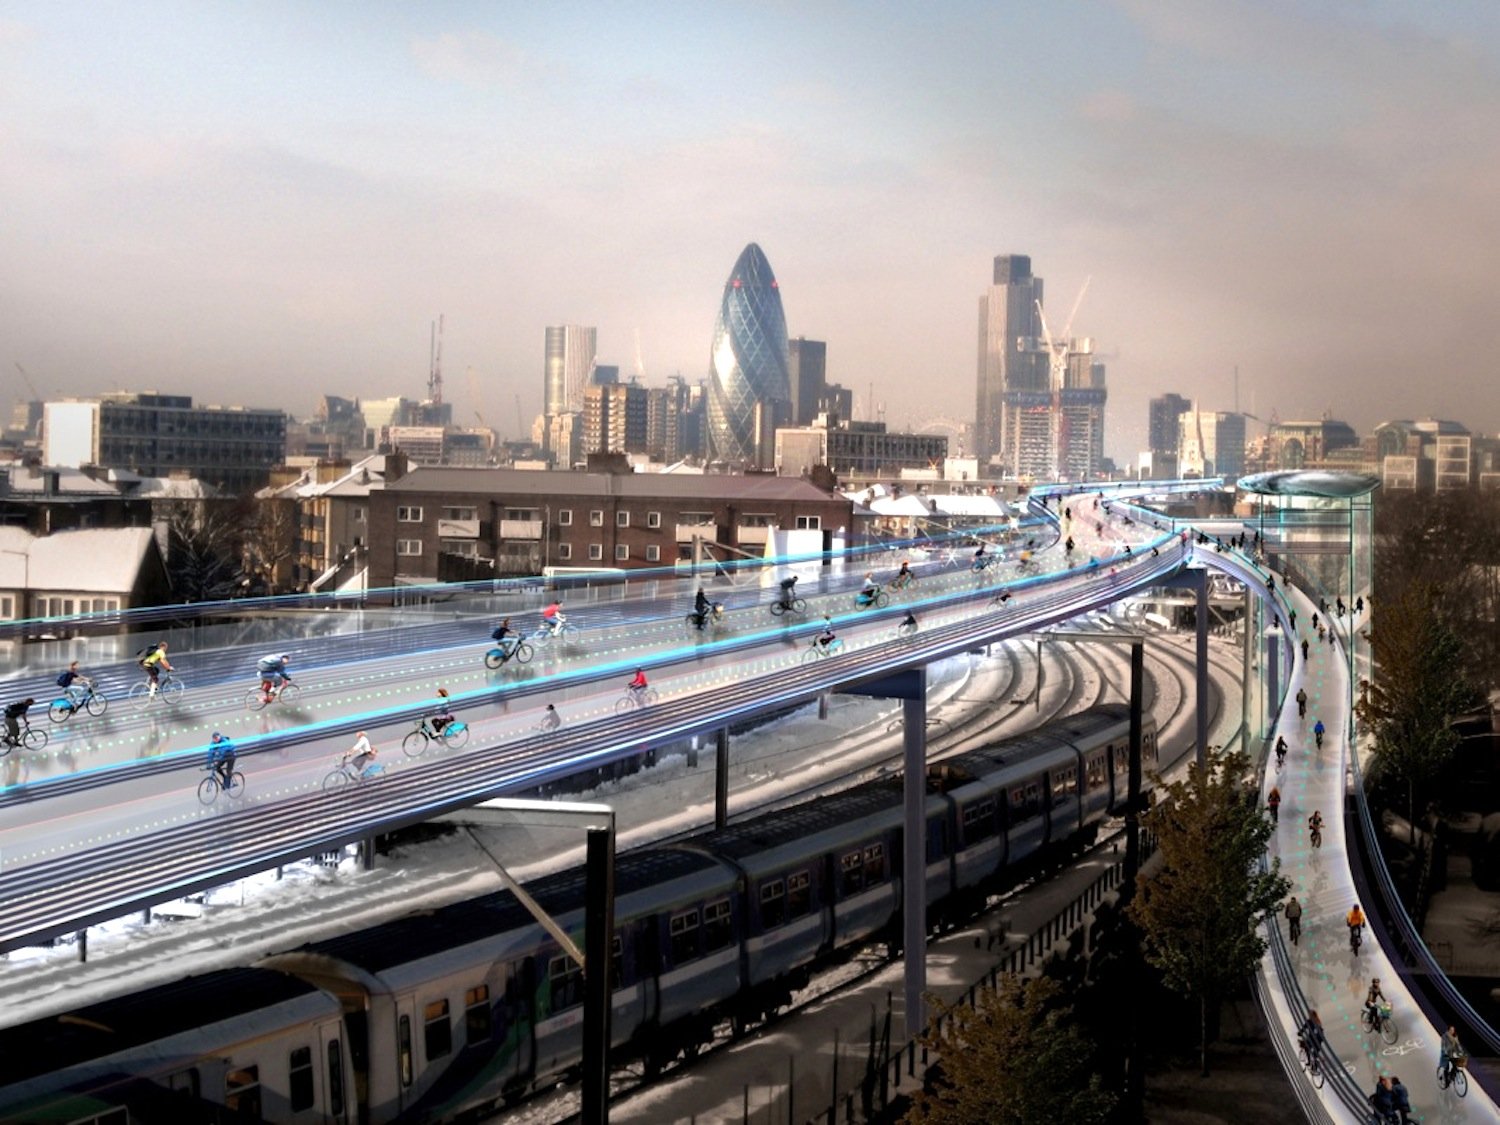 Nicht aufs Wasser, sondern in die Luft will Stararchitekt Norman Foster den schnellen Radverkehr in London verlegen. Er hat eine Hochautobahn namens SkyCycle für Radfahrer quer durch London vorgeschlagen, die an ihren Rändern sogar bebaut werden kann.